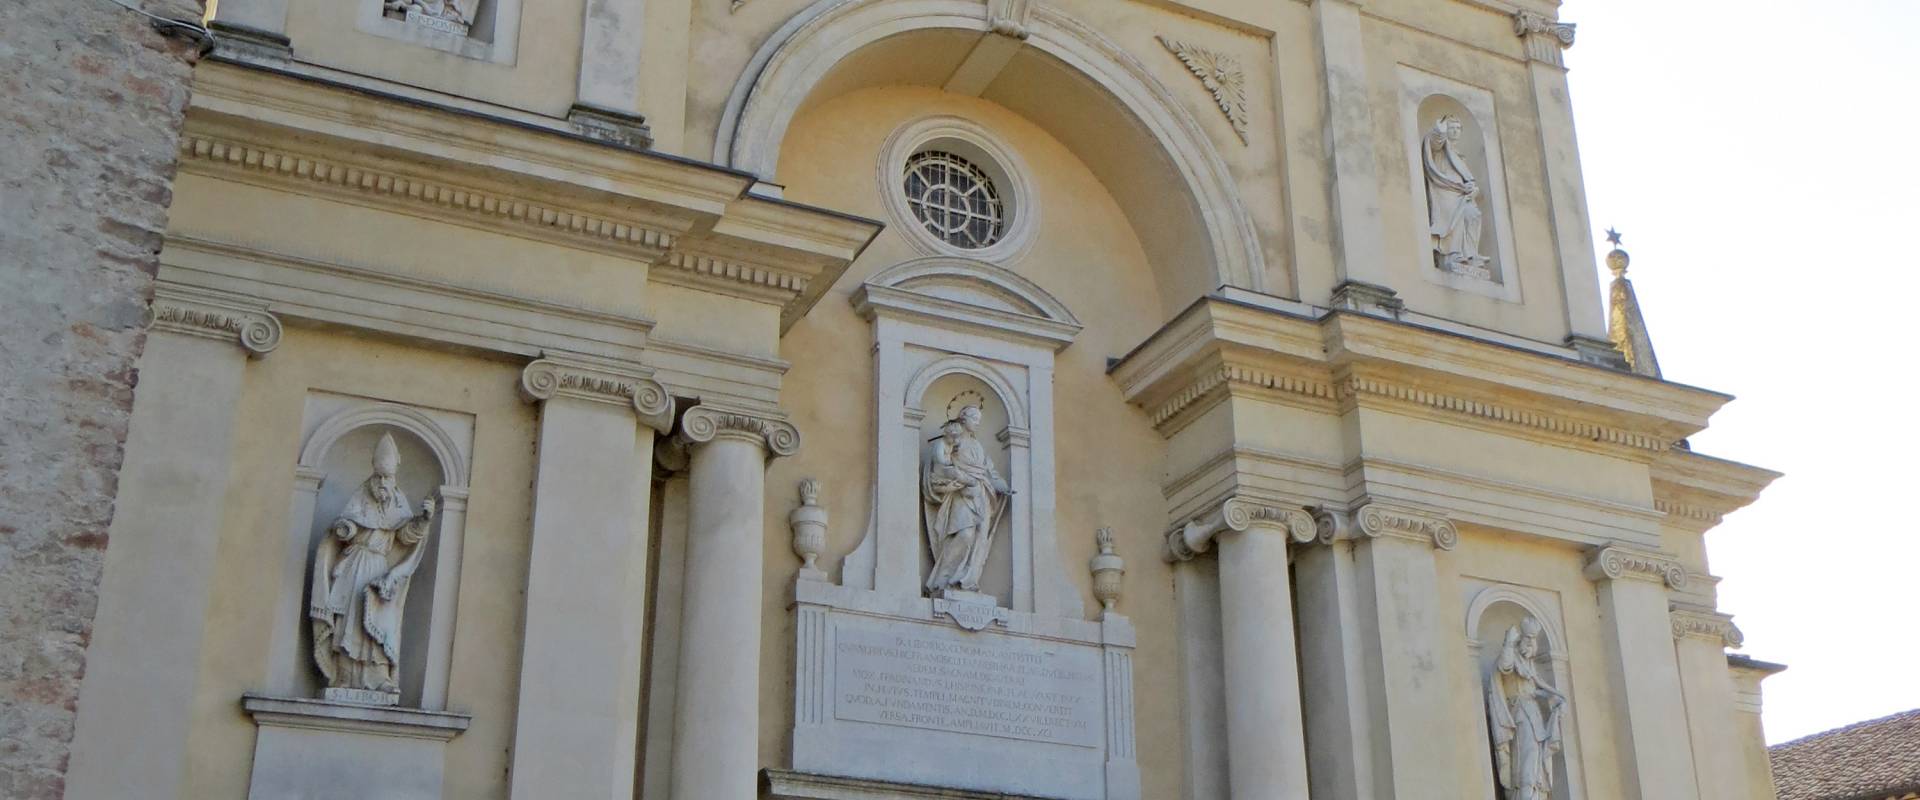 Cappella ducale di San Liborio (Colorno) - facciata 2 2019-06-20 photo by Parma198